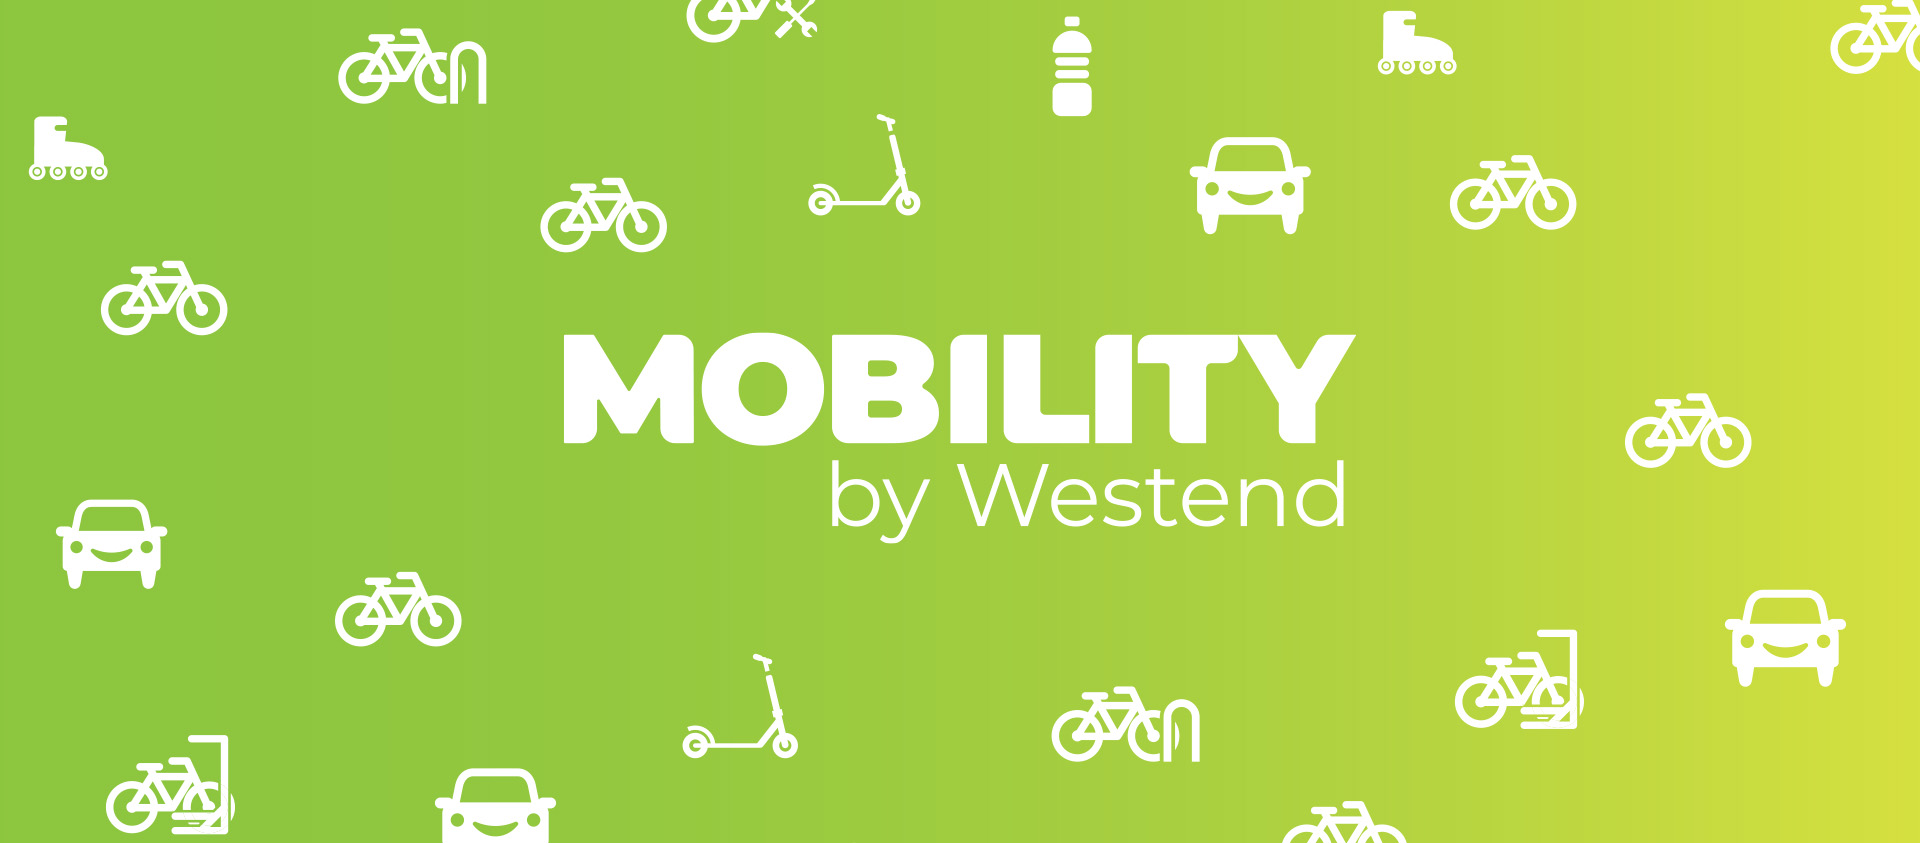 Bővítettük a mobilitási parkunkat, már 40 e-töltőt használhattok a Westendben!